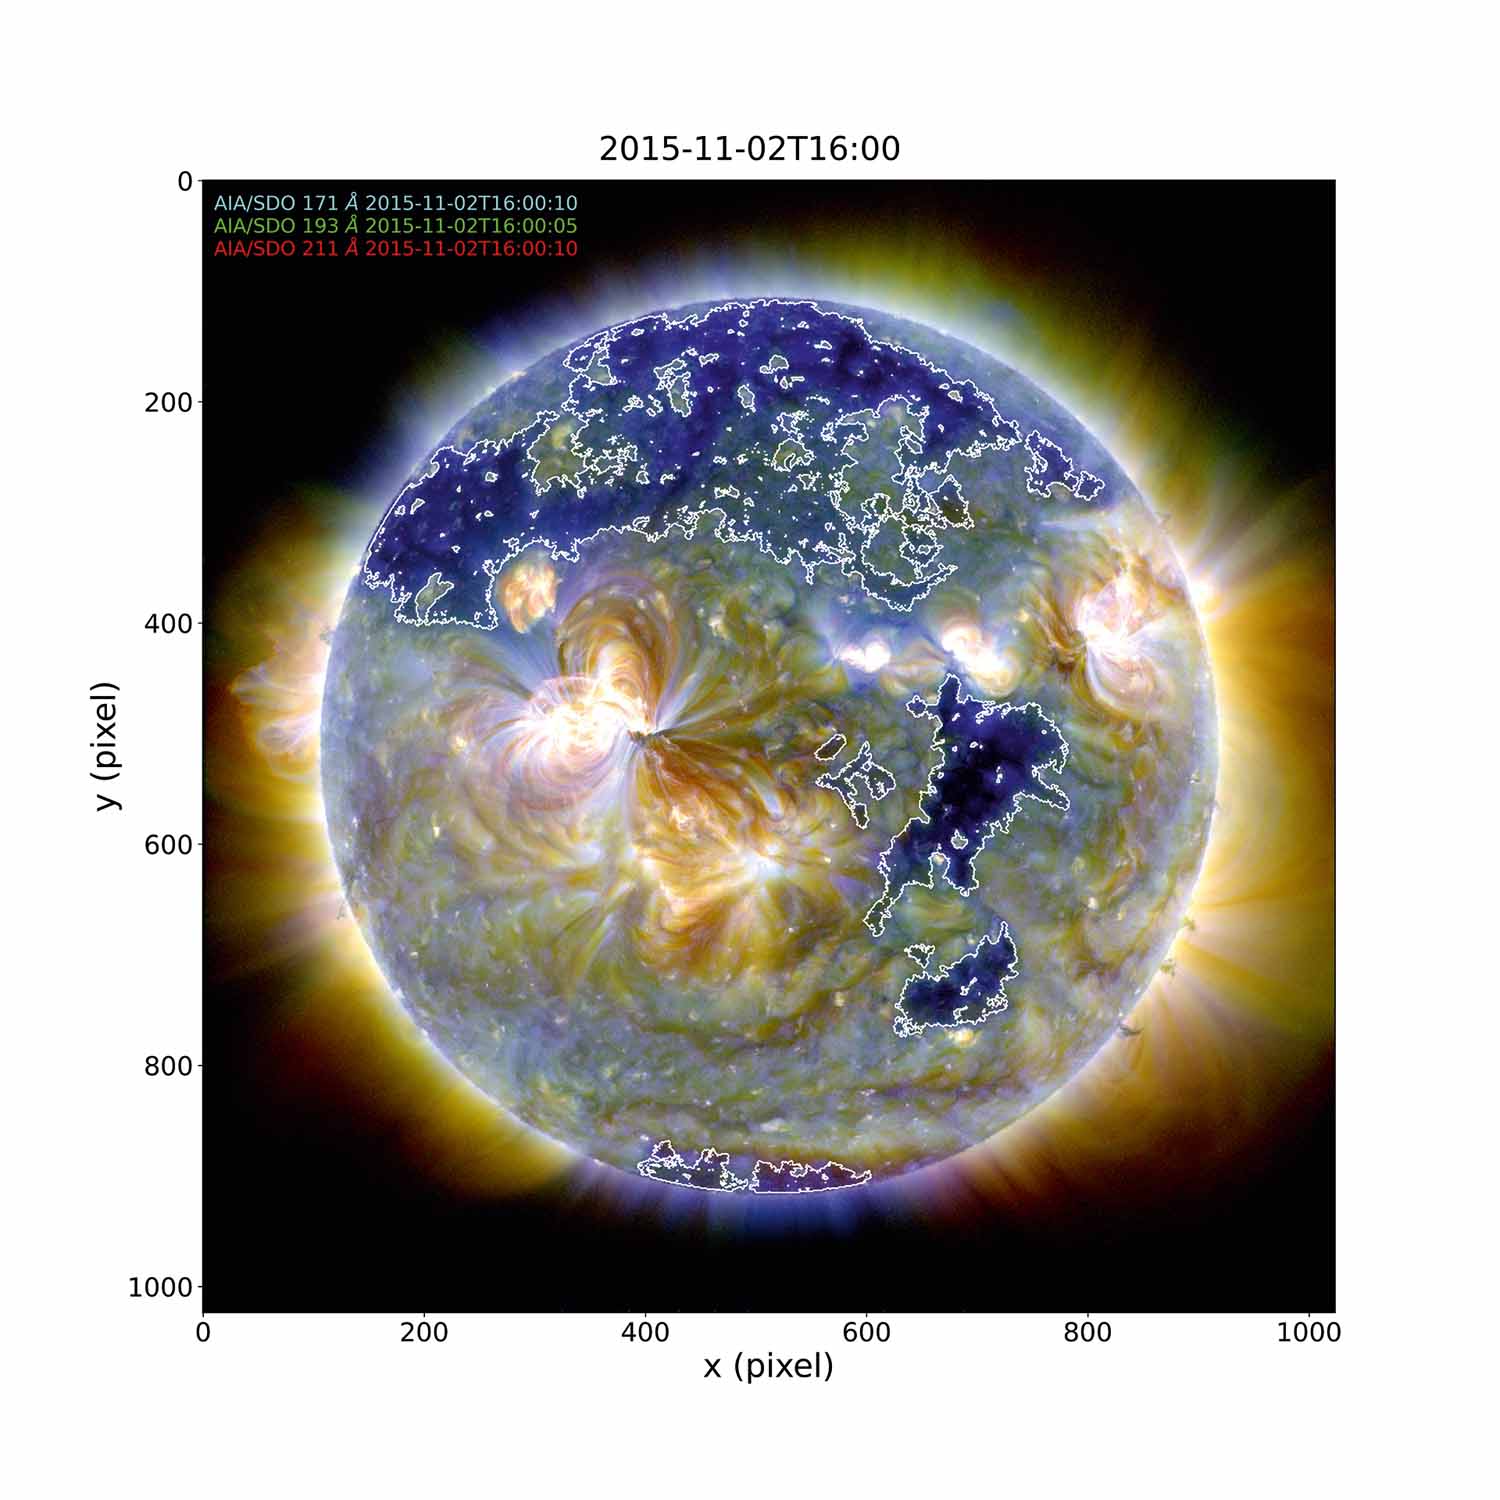 Identified Coronal Hole (contours) on the Sun using AIA/SDO data